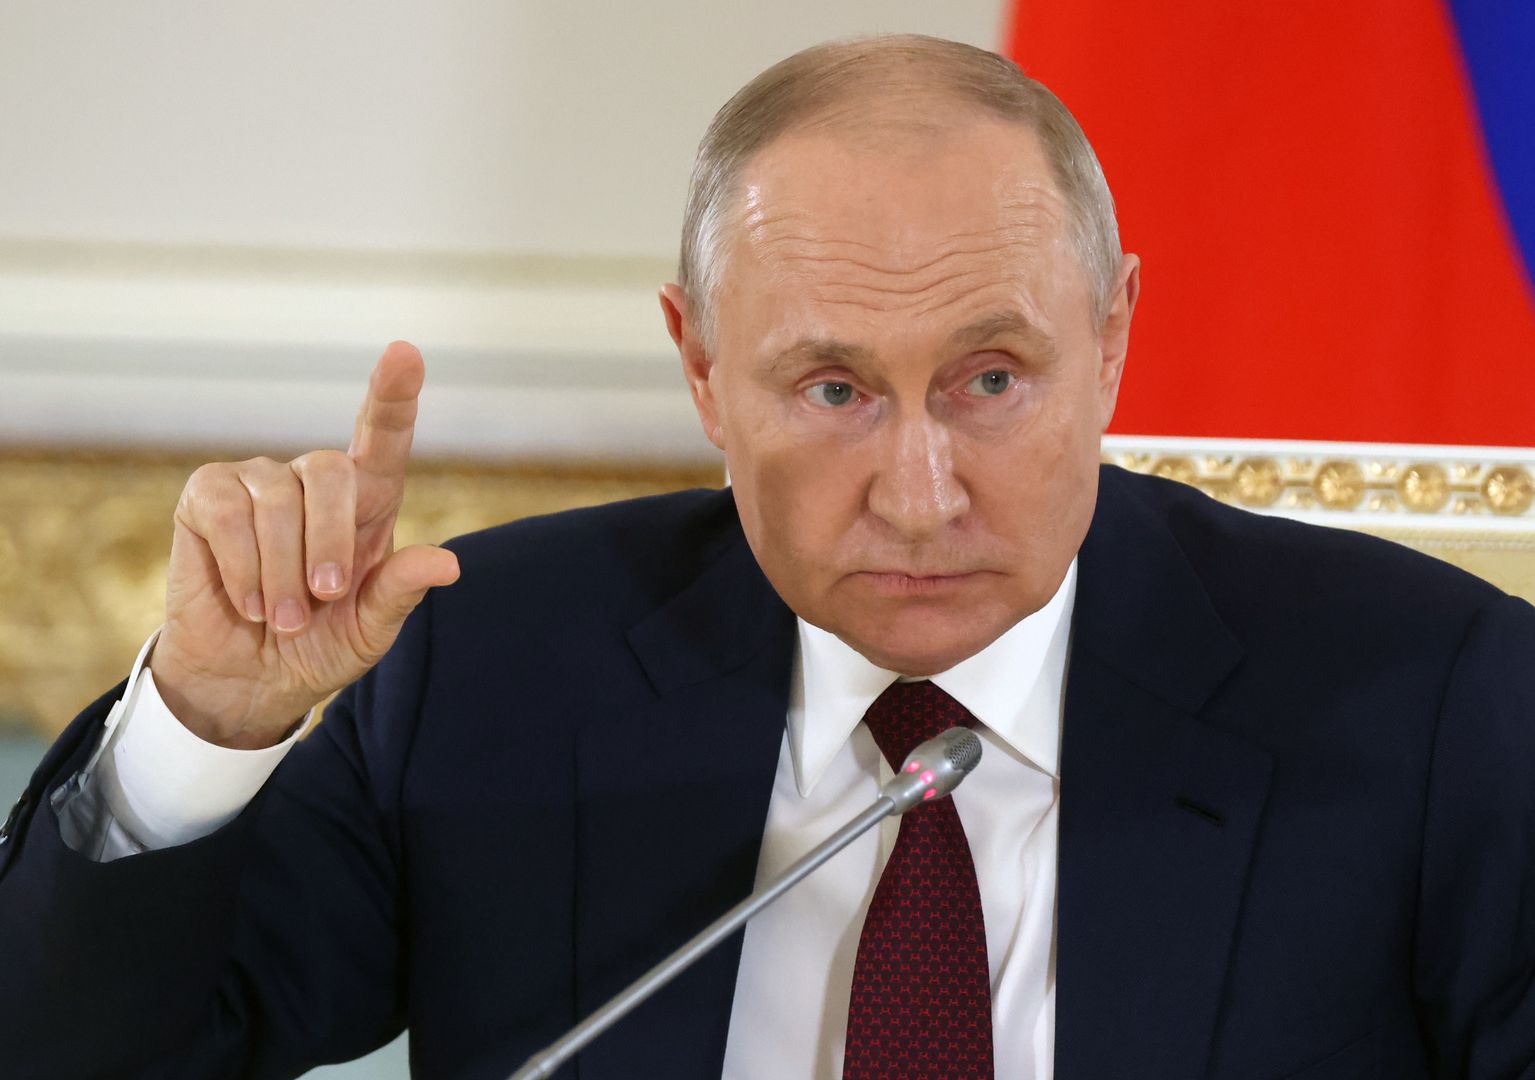 Putin poszedł o krok za daleko? "Dla elit w Rosji jest już jasne"